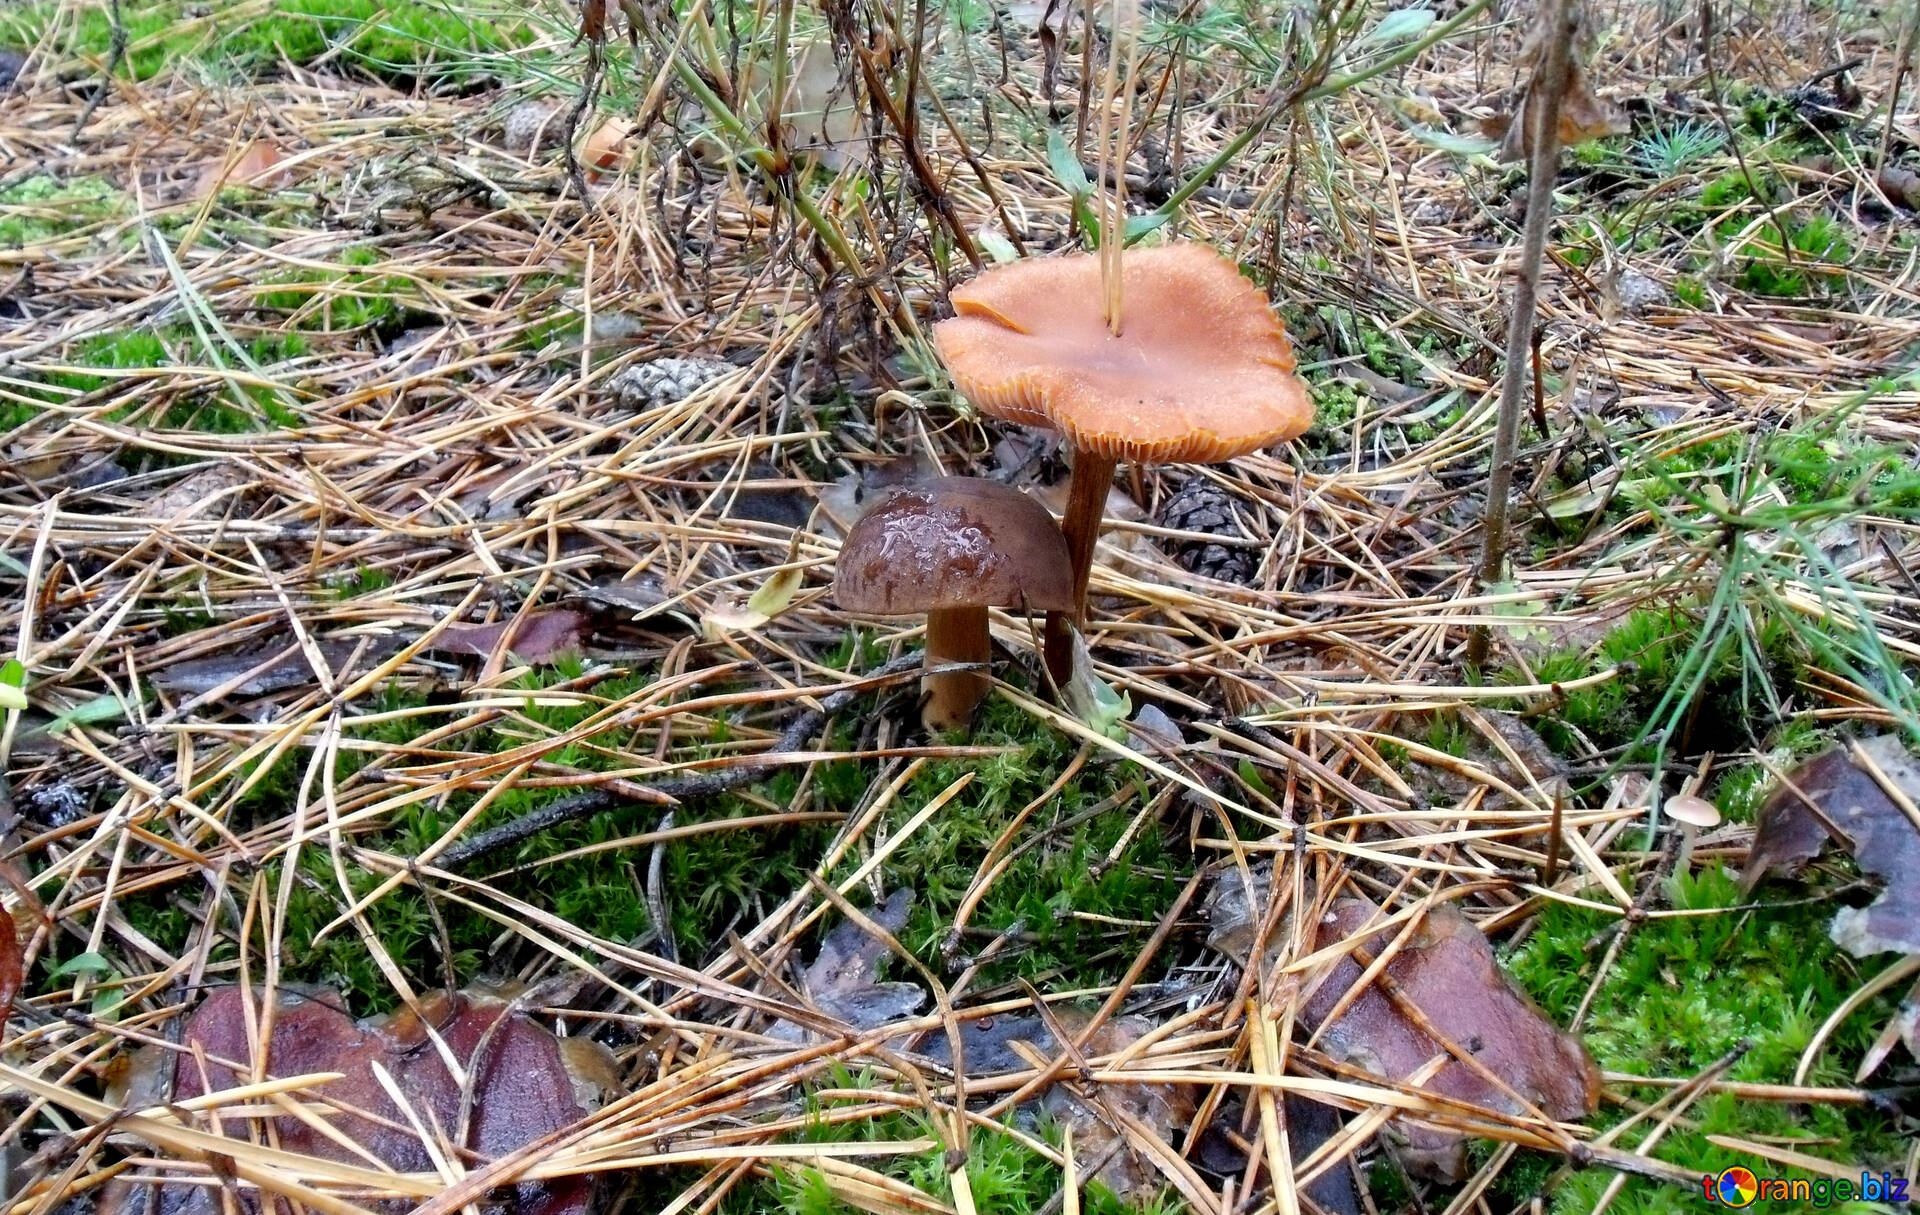 фото и название съедобных грибов в россии